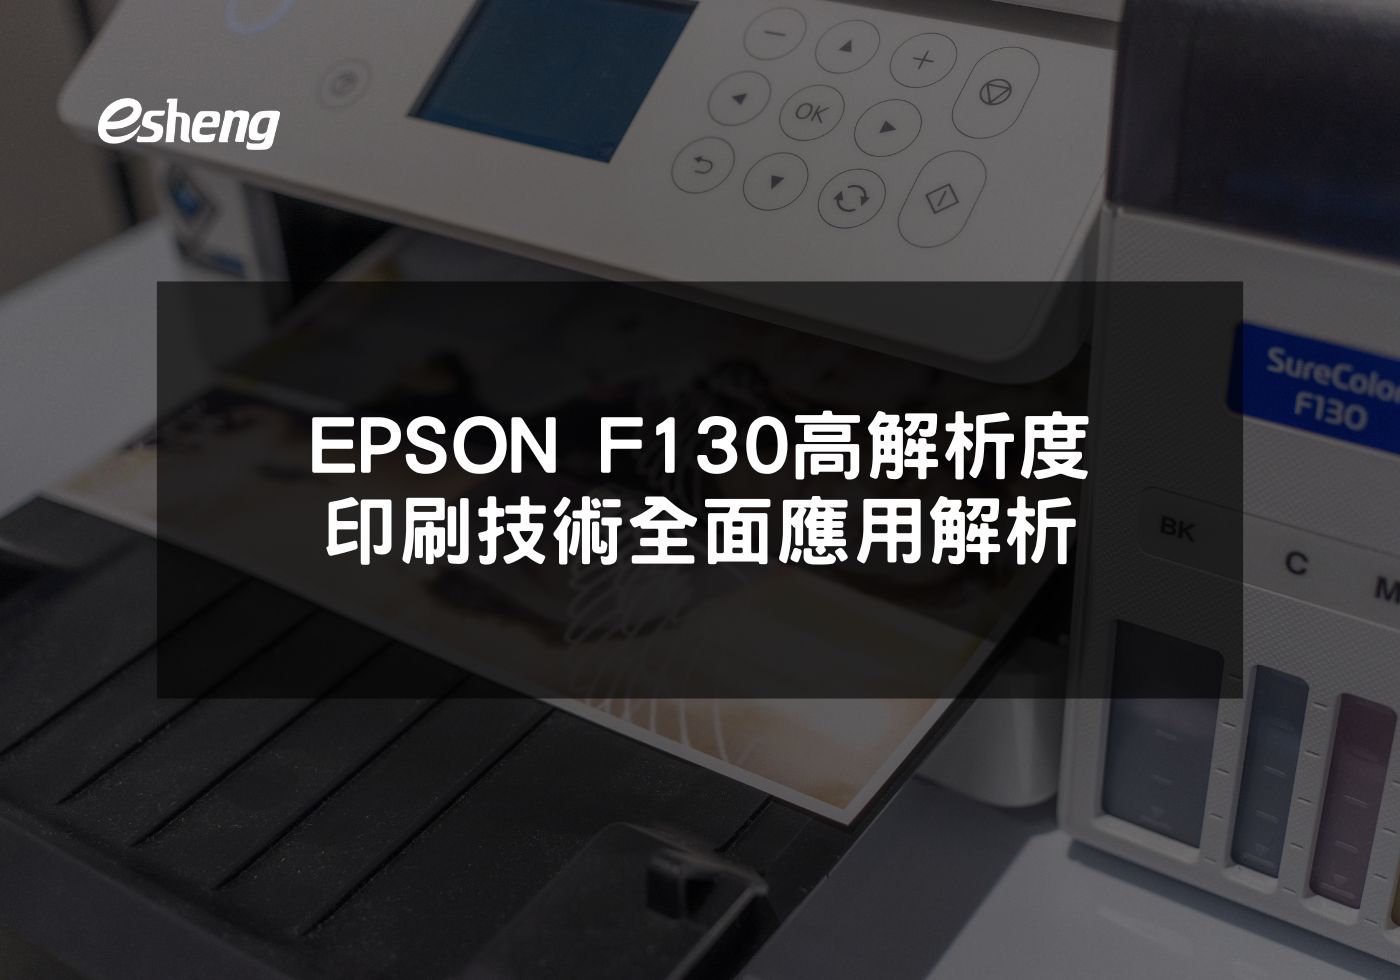 提升印刷品質與效率 EPSON F130熱昇華印表機的選擇